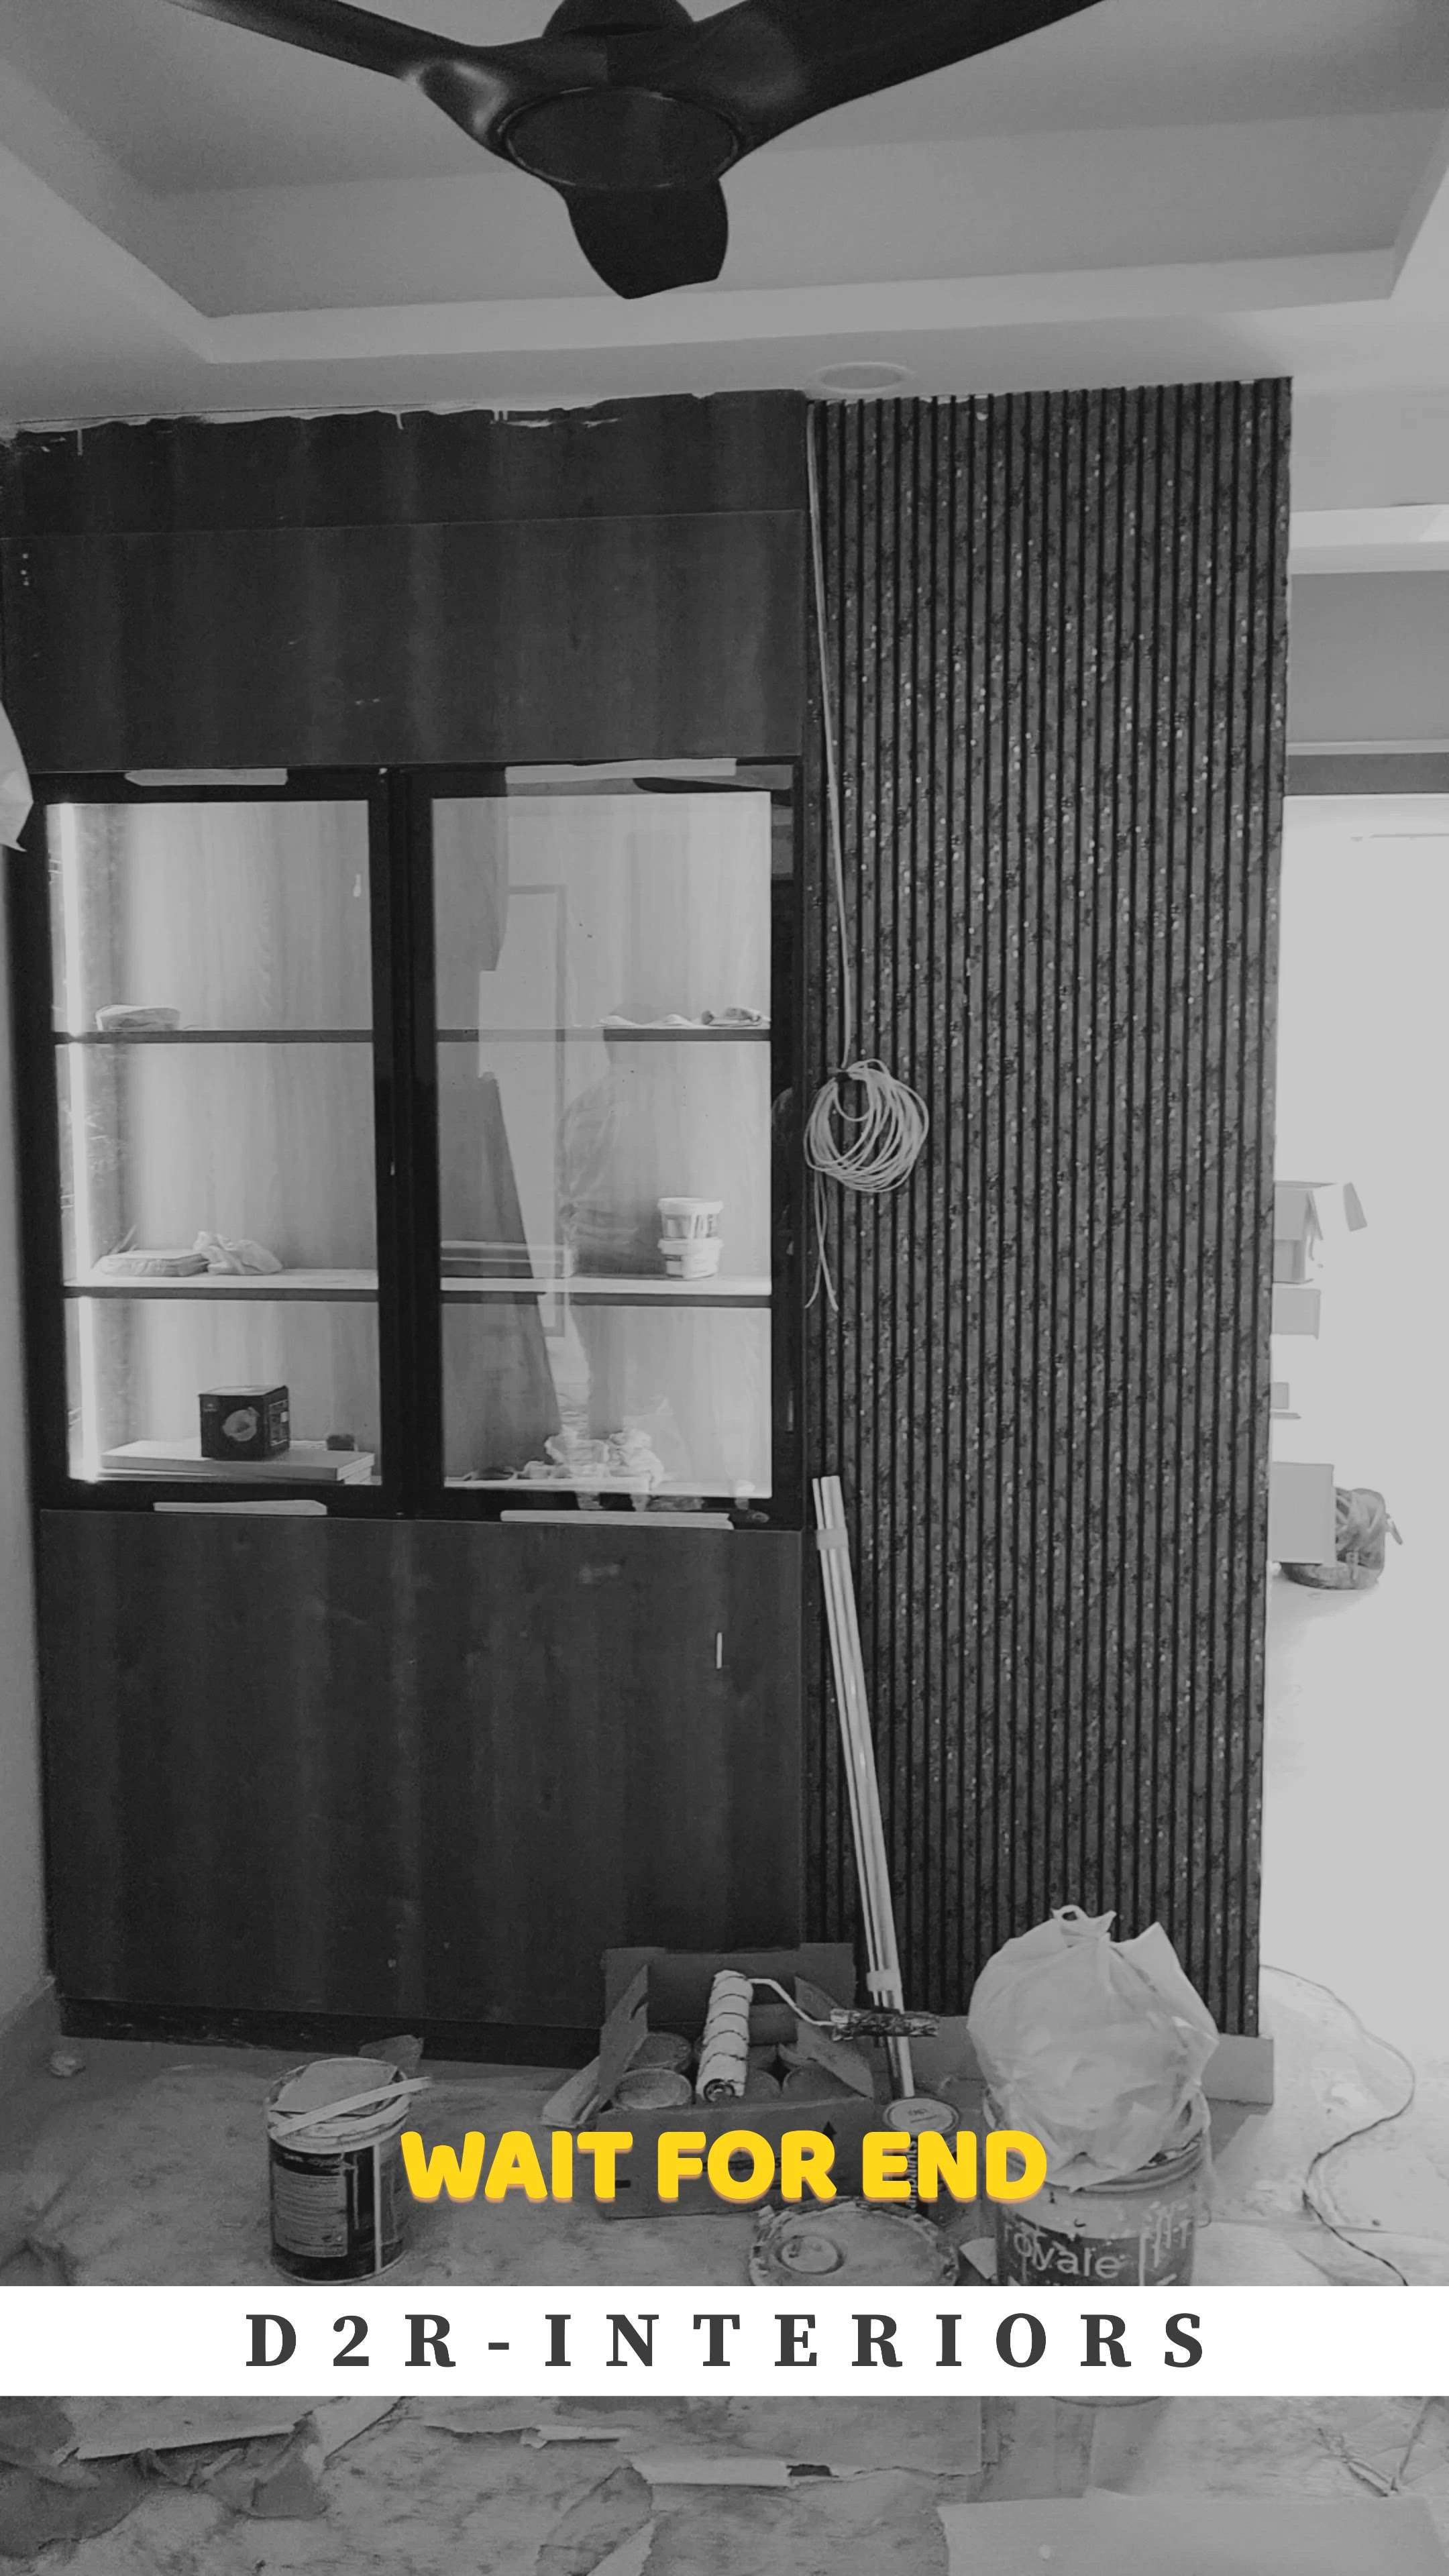 D2R (Dream to Real) Interiors
 #LivingroomDesigns #3bhkinterior #woodenworks #ModularKitchen #glasswardrobe #InteriorDesigner #interiorexecution #completeinterior #FlooringTiles #popfalseceiling #wallmoulding #rattandesign #3ddesigns #2dDesign #tvunits #crockerydesign #KitchenIdeas